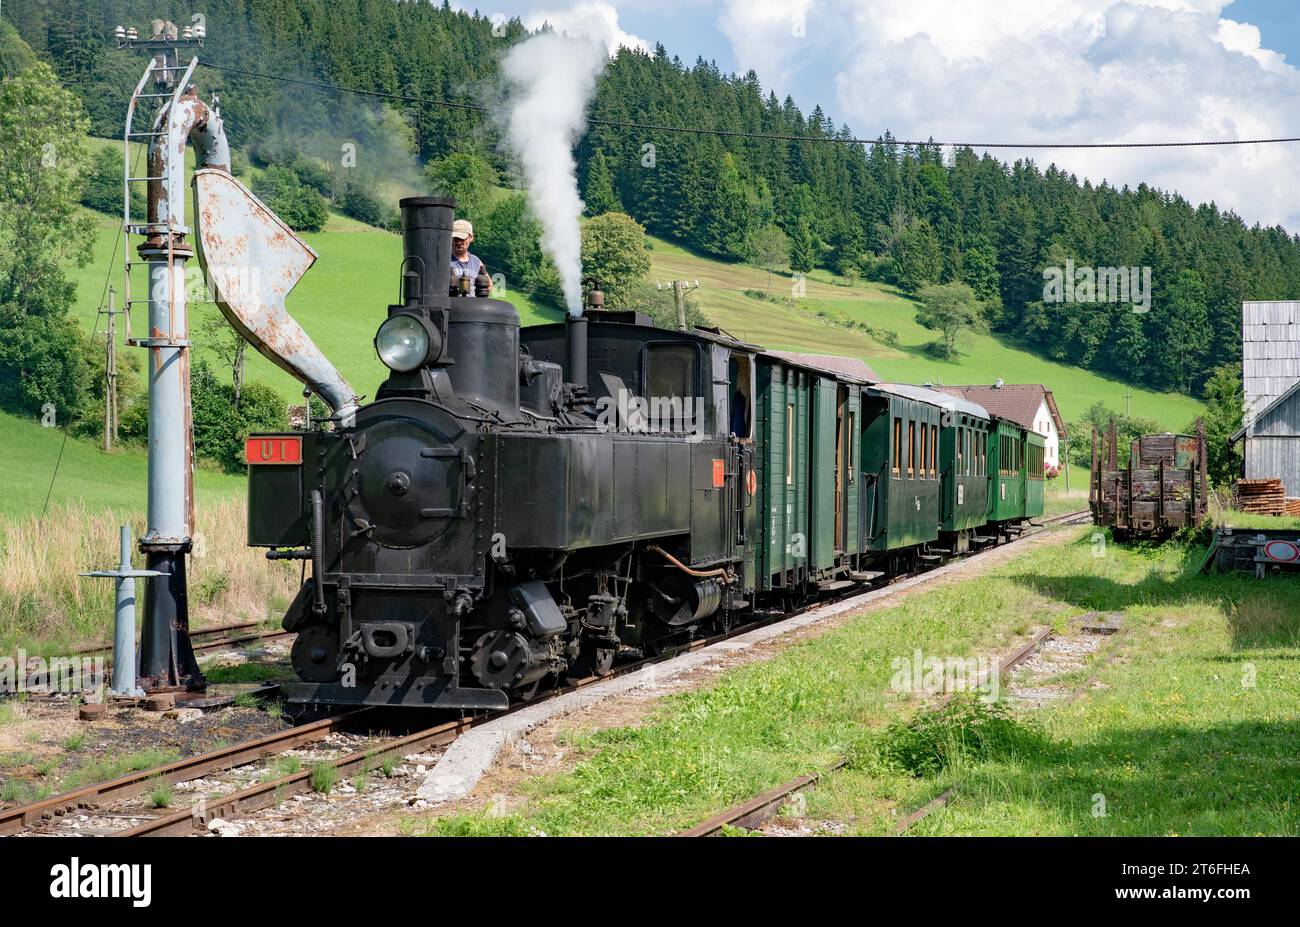 Steam locomotive of the Ybbstalbahn, Pfaffenschlag, Oetscherland, Lower Austria, Austria Stock Photo